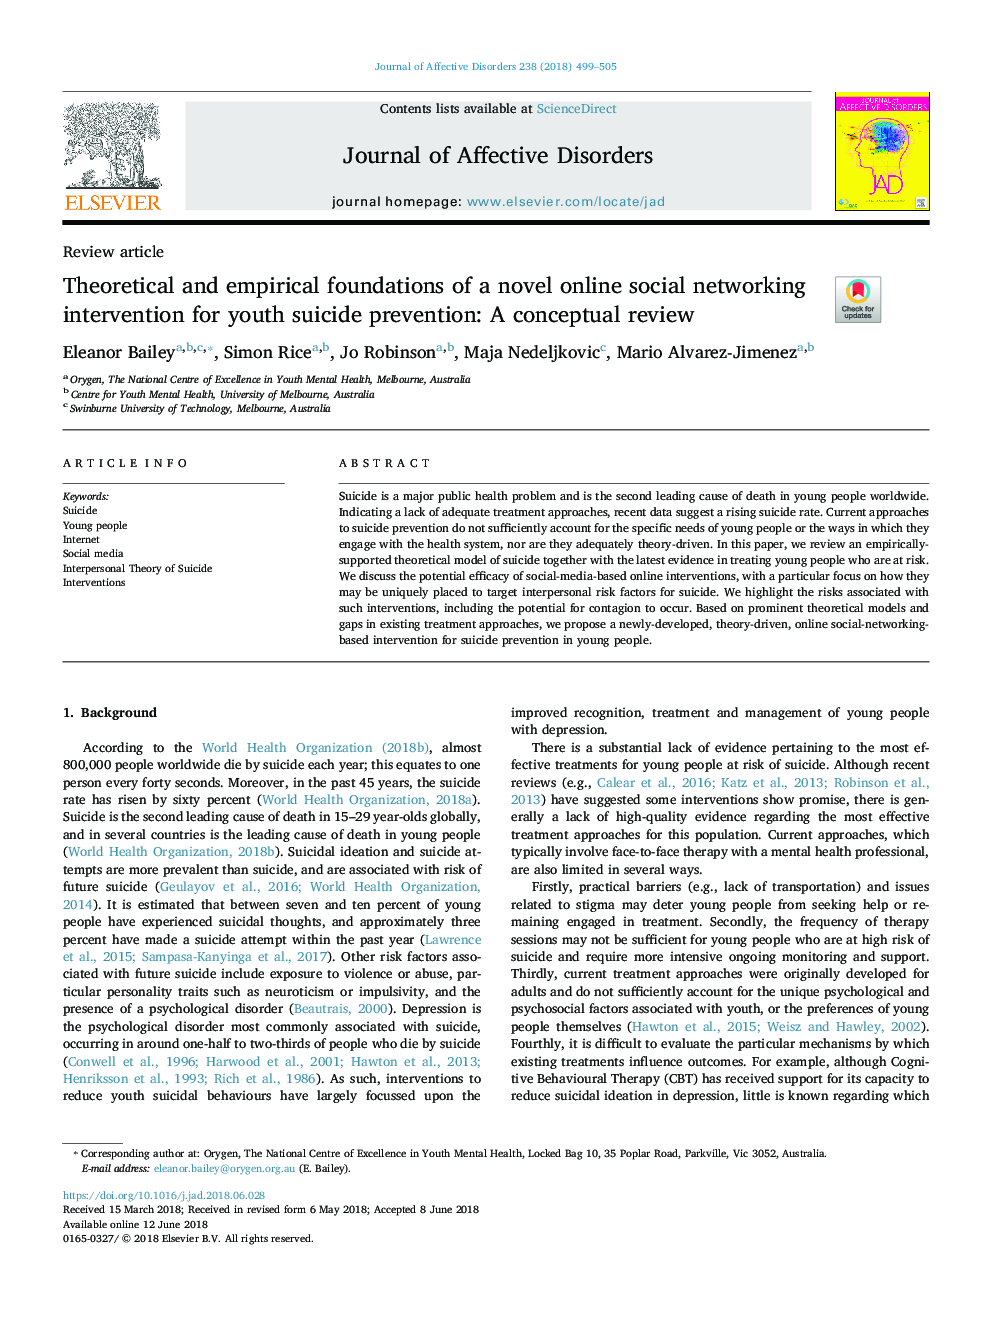 مبانی نظری و تجربی مداخله شبکه های اجتماعی آنلاین در پیشگیری از خودکشی جوانان: یک بررسی مفهومی 